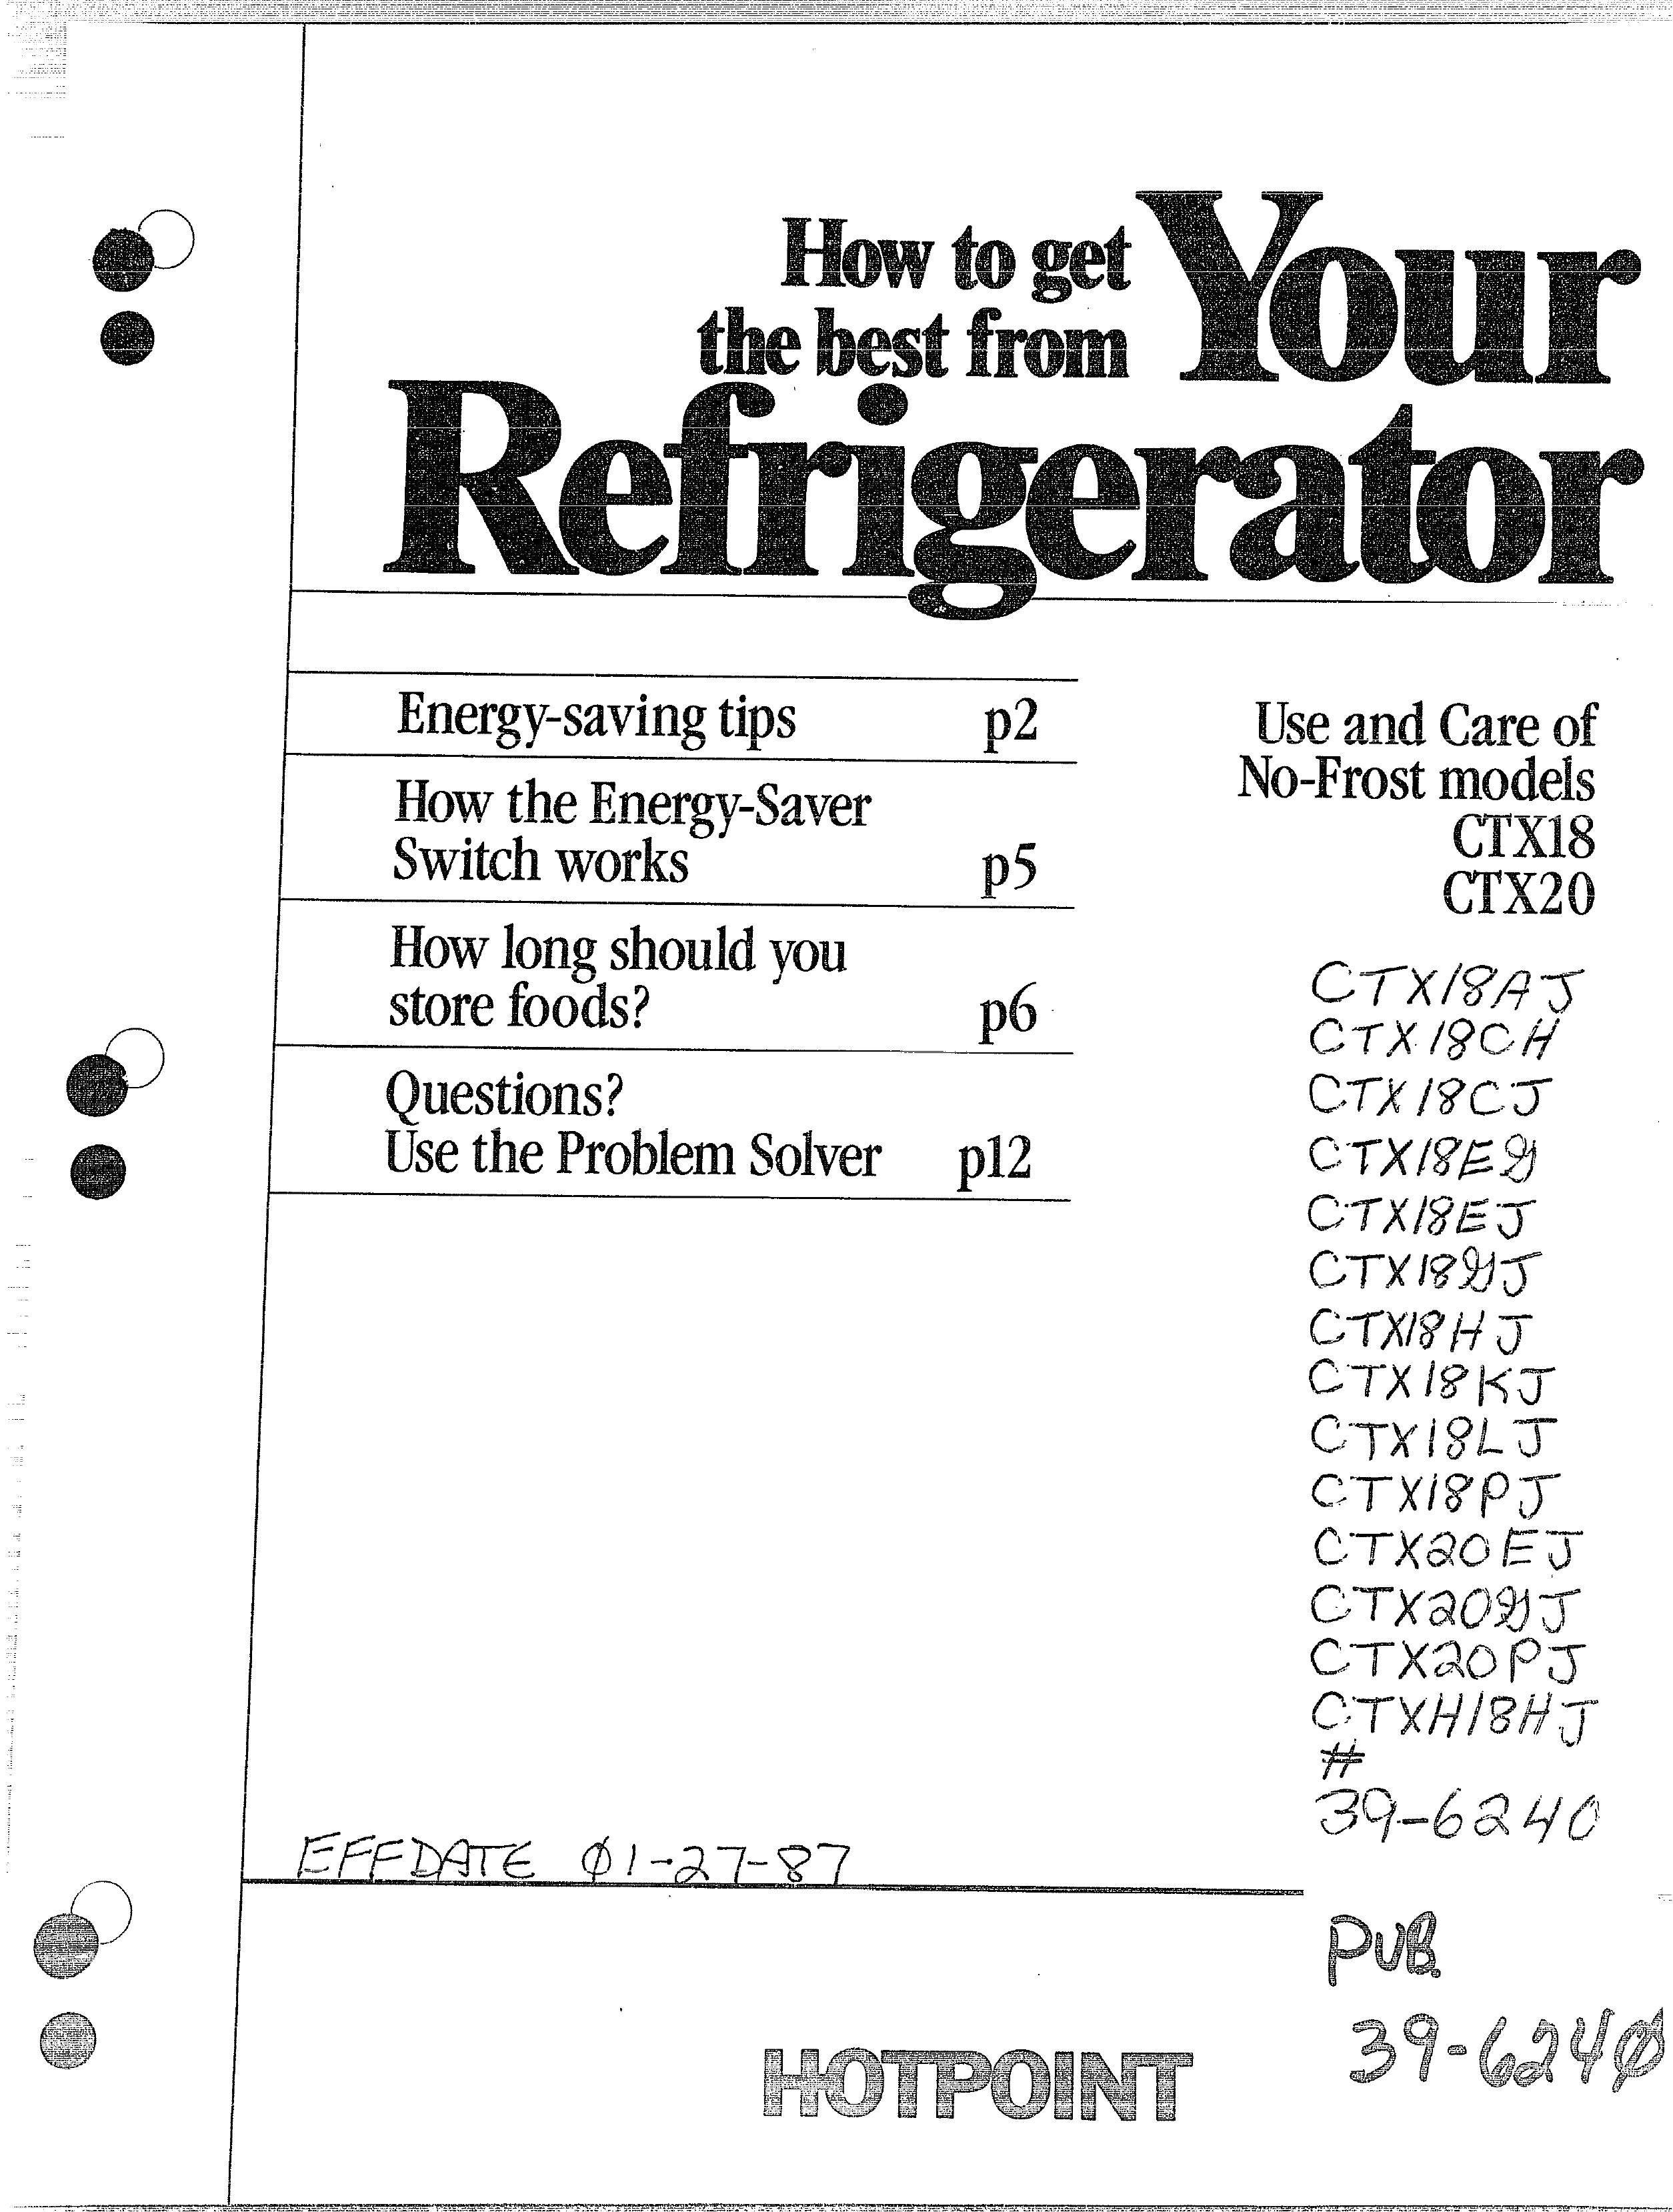 Hotpoint 39-6240 Refrigerator User Manual